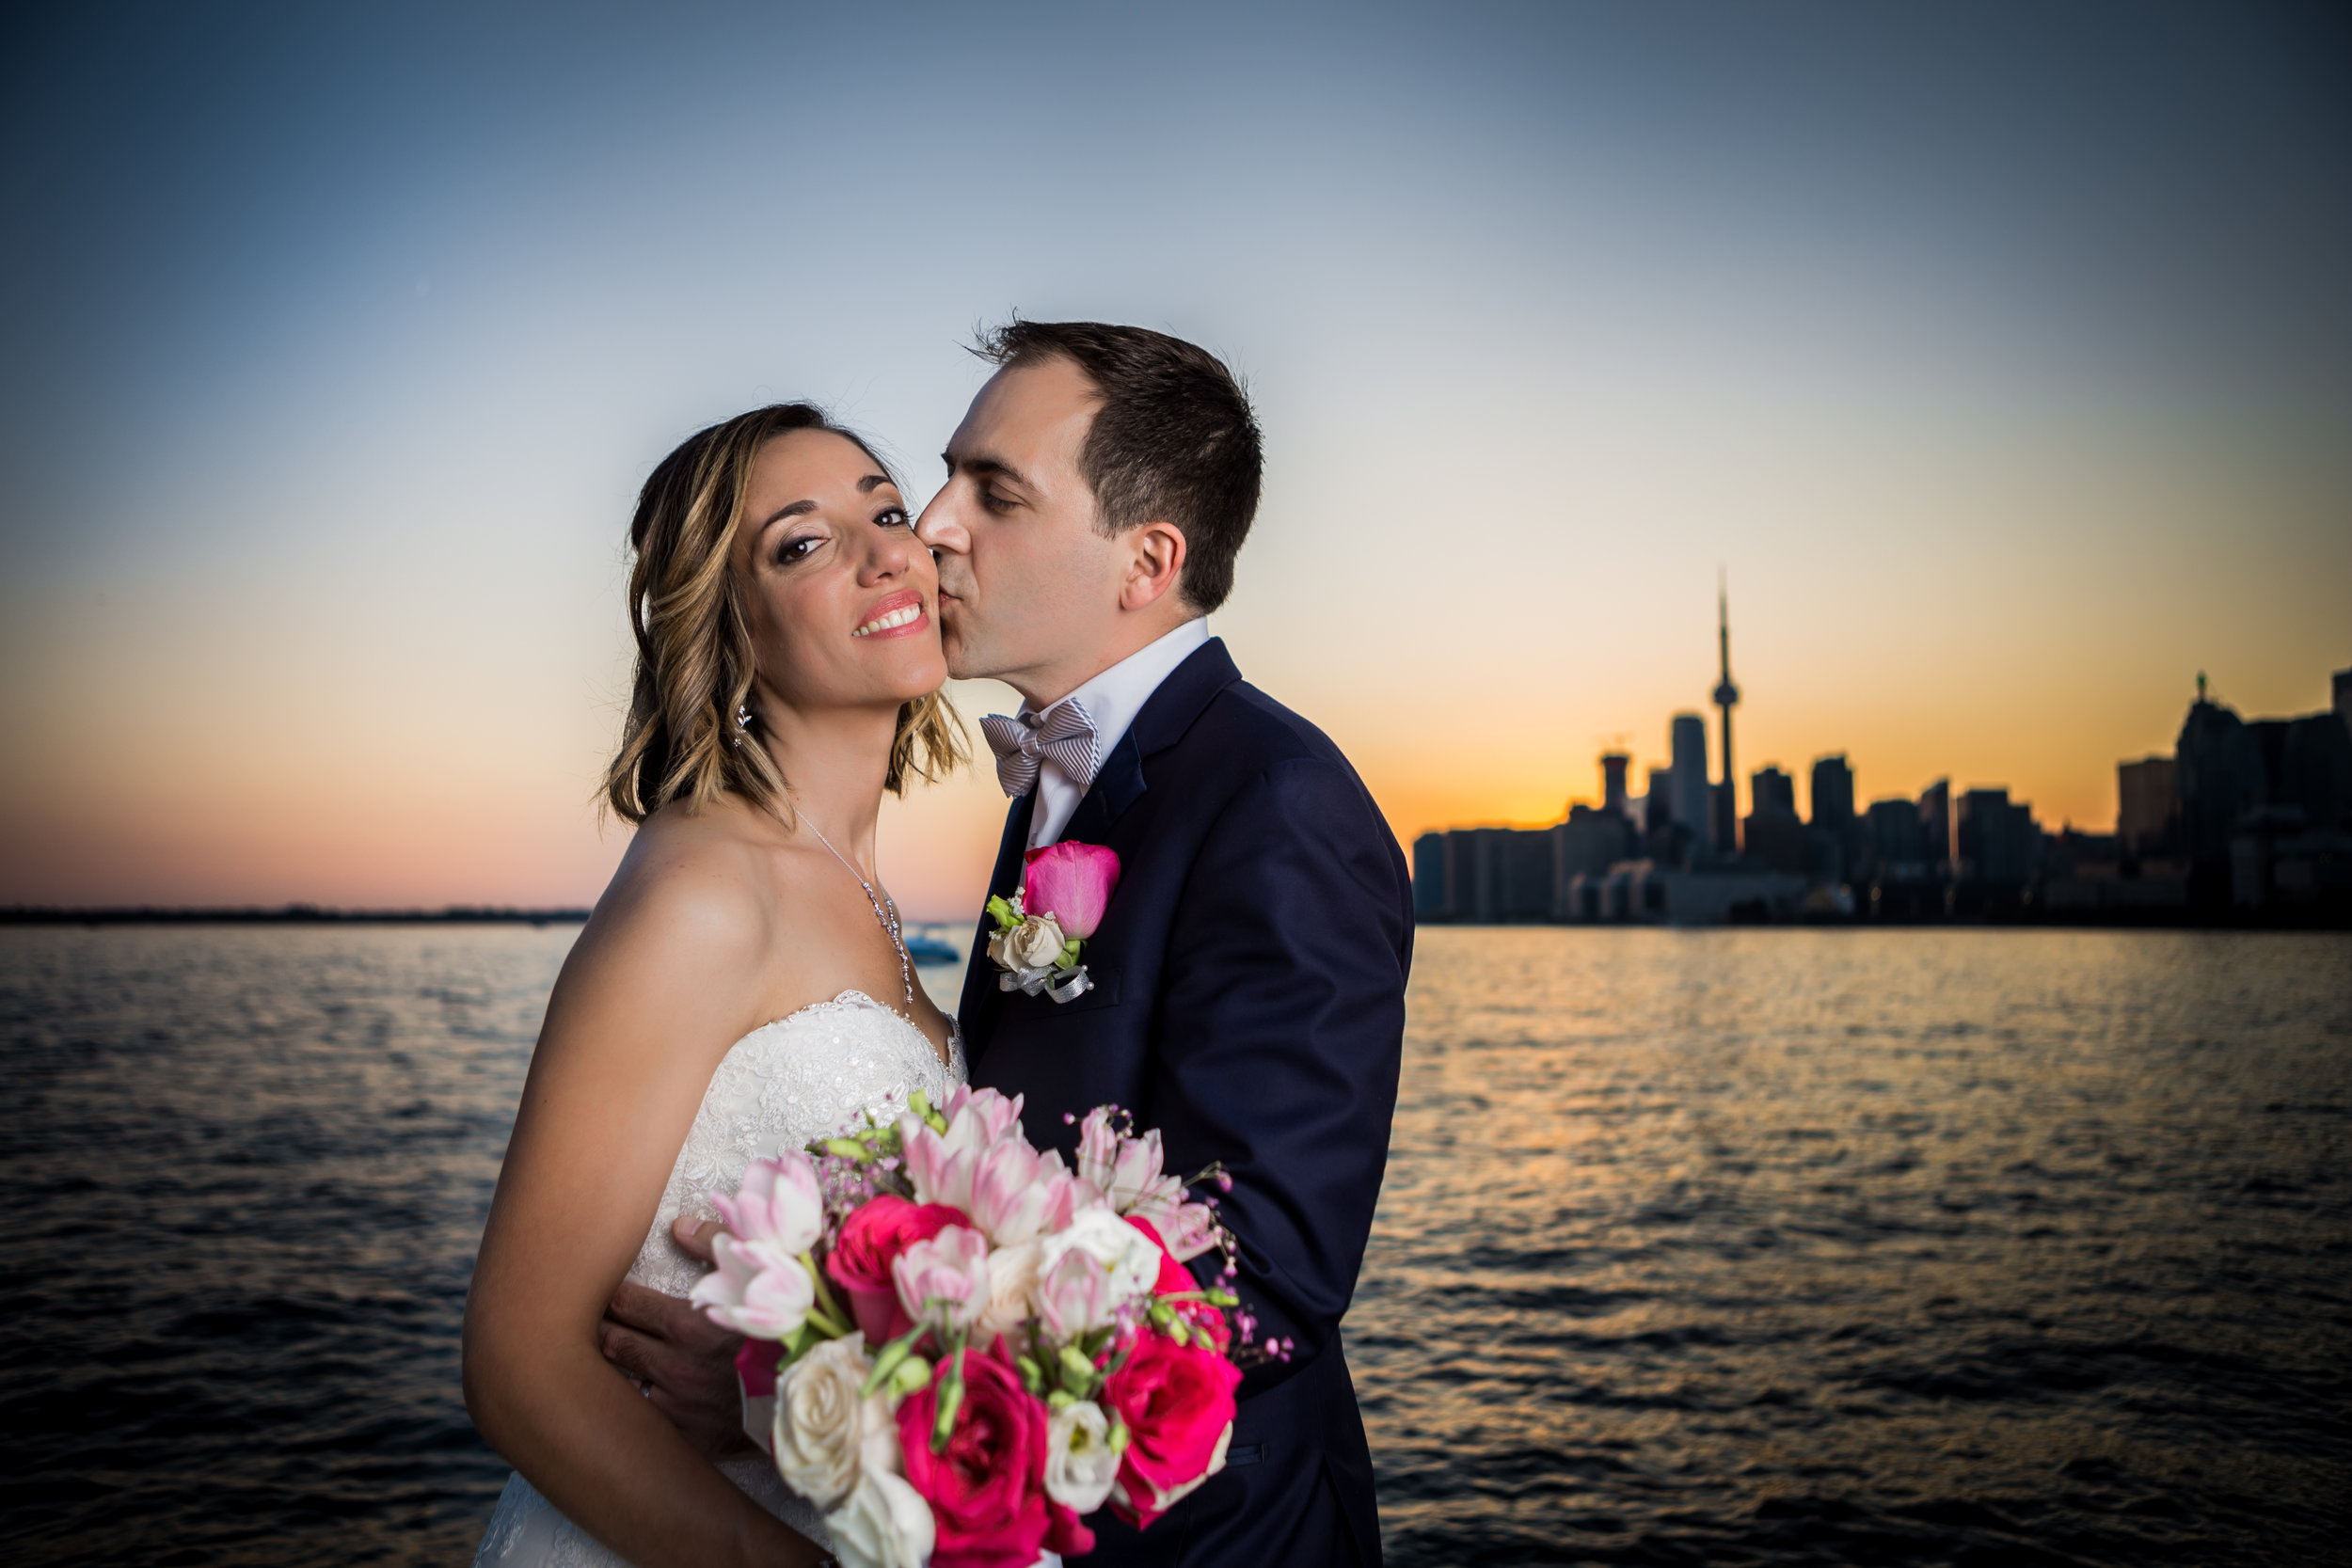 Wedding Photo taken at the Toronto Harbour Polson Pier